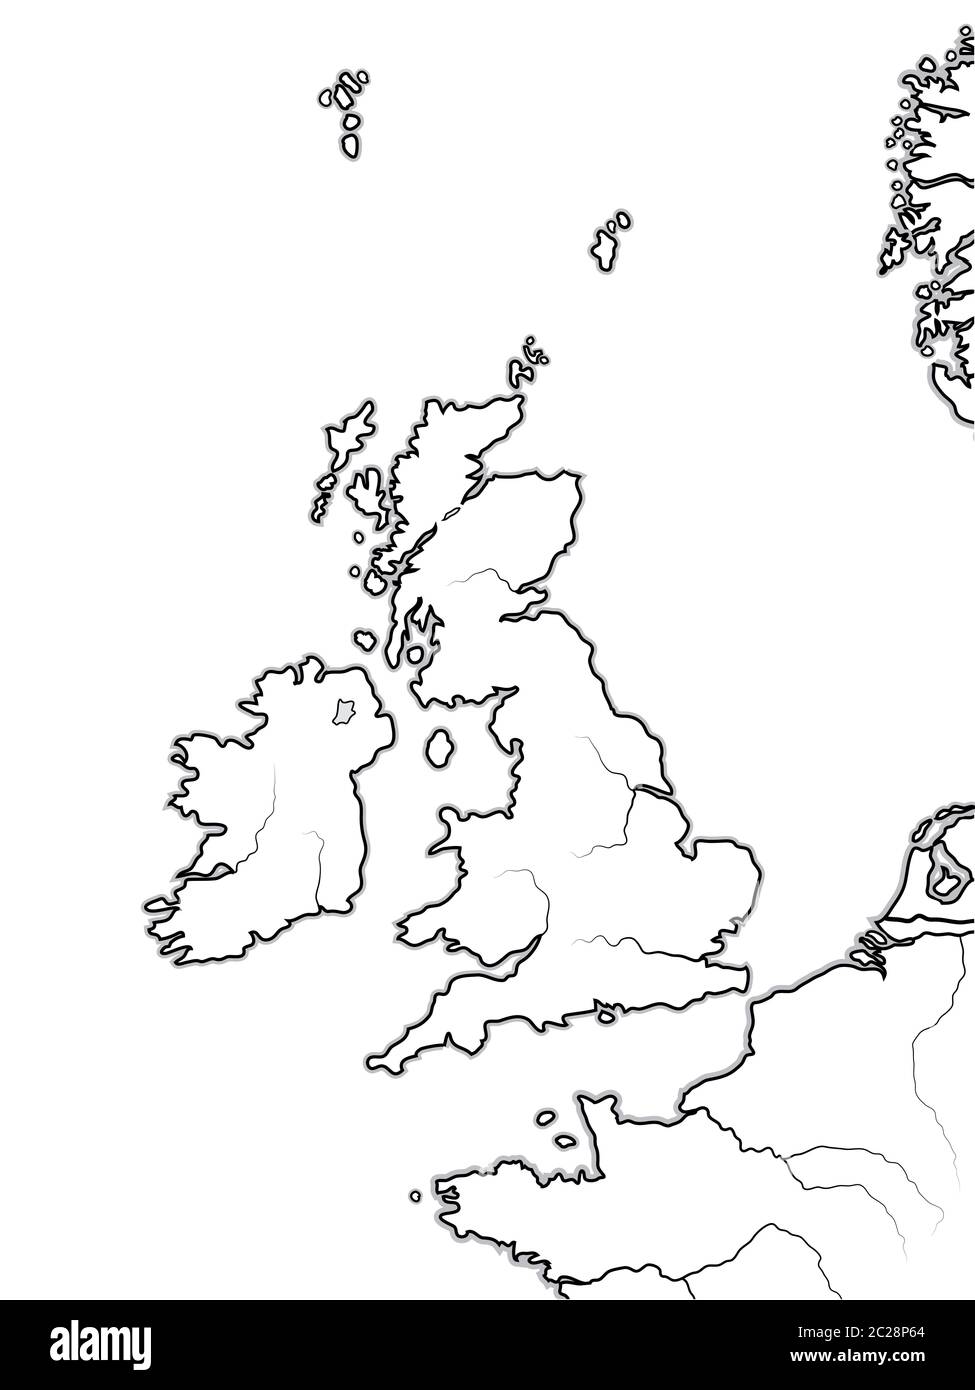 Mappa DELLE terre INGLESI: Regno Unito, Gran Bretagna, Inghilterra, Scozia, Galles e Irlanda. Grafico geografico. Foto Stock